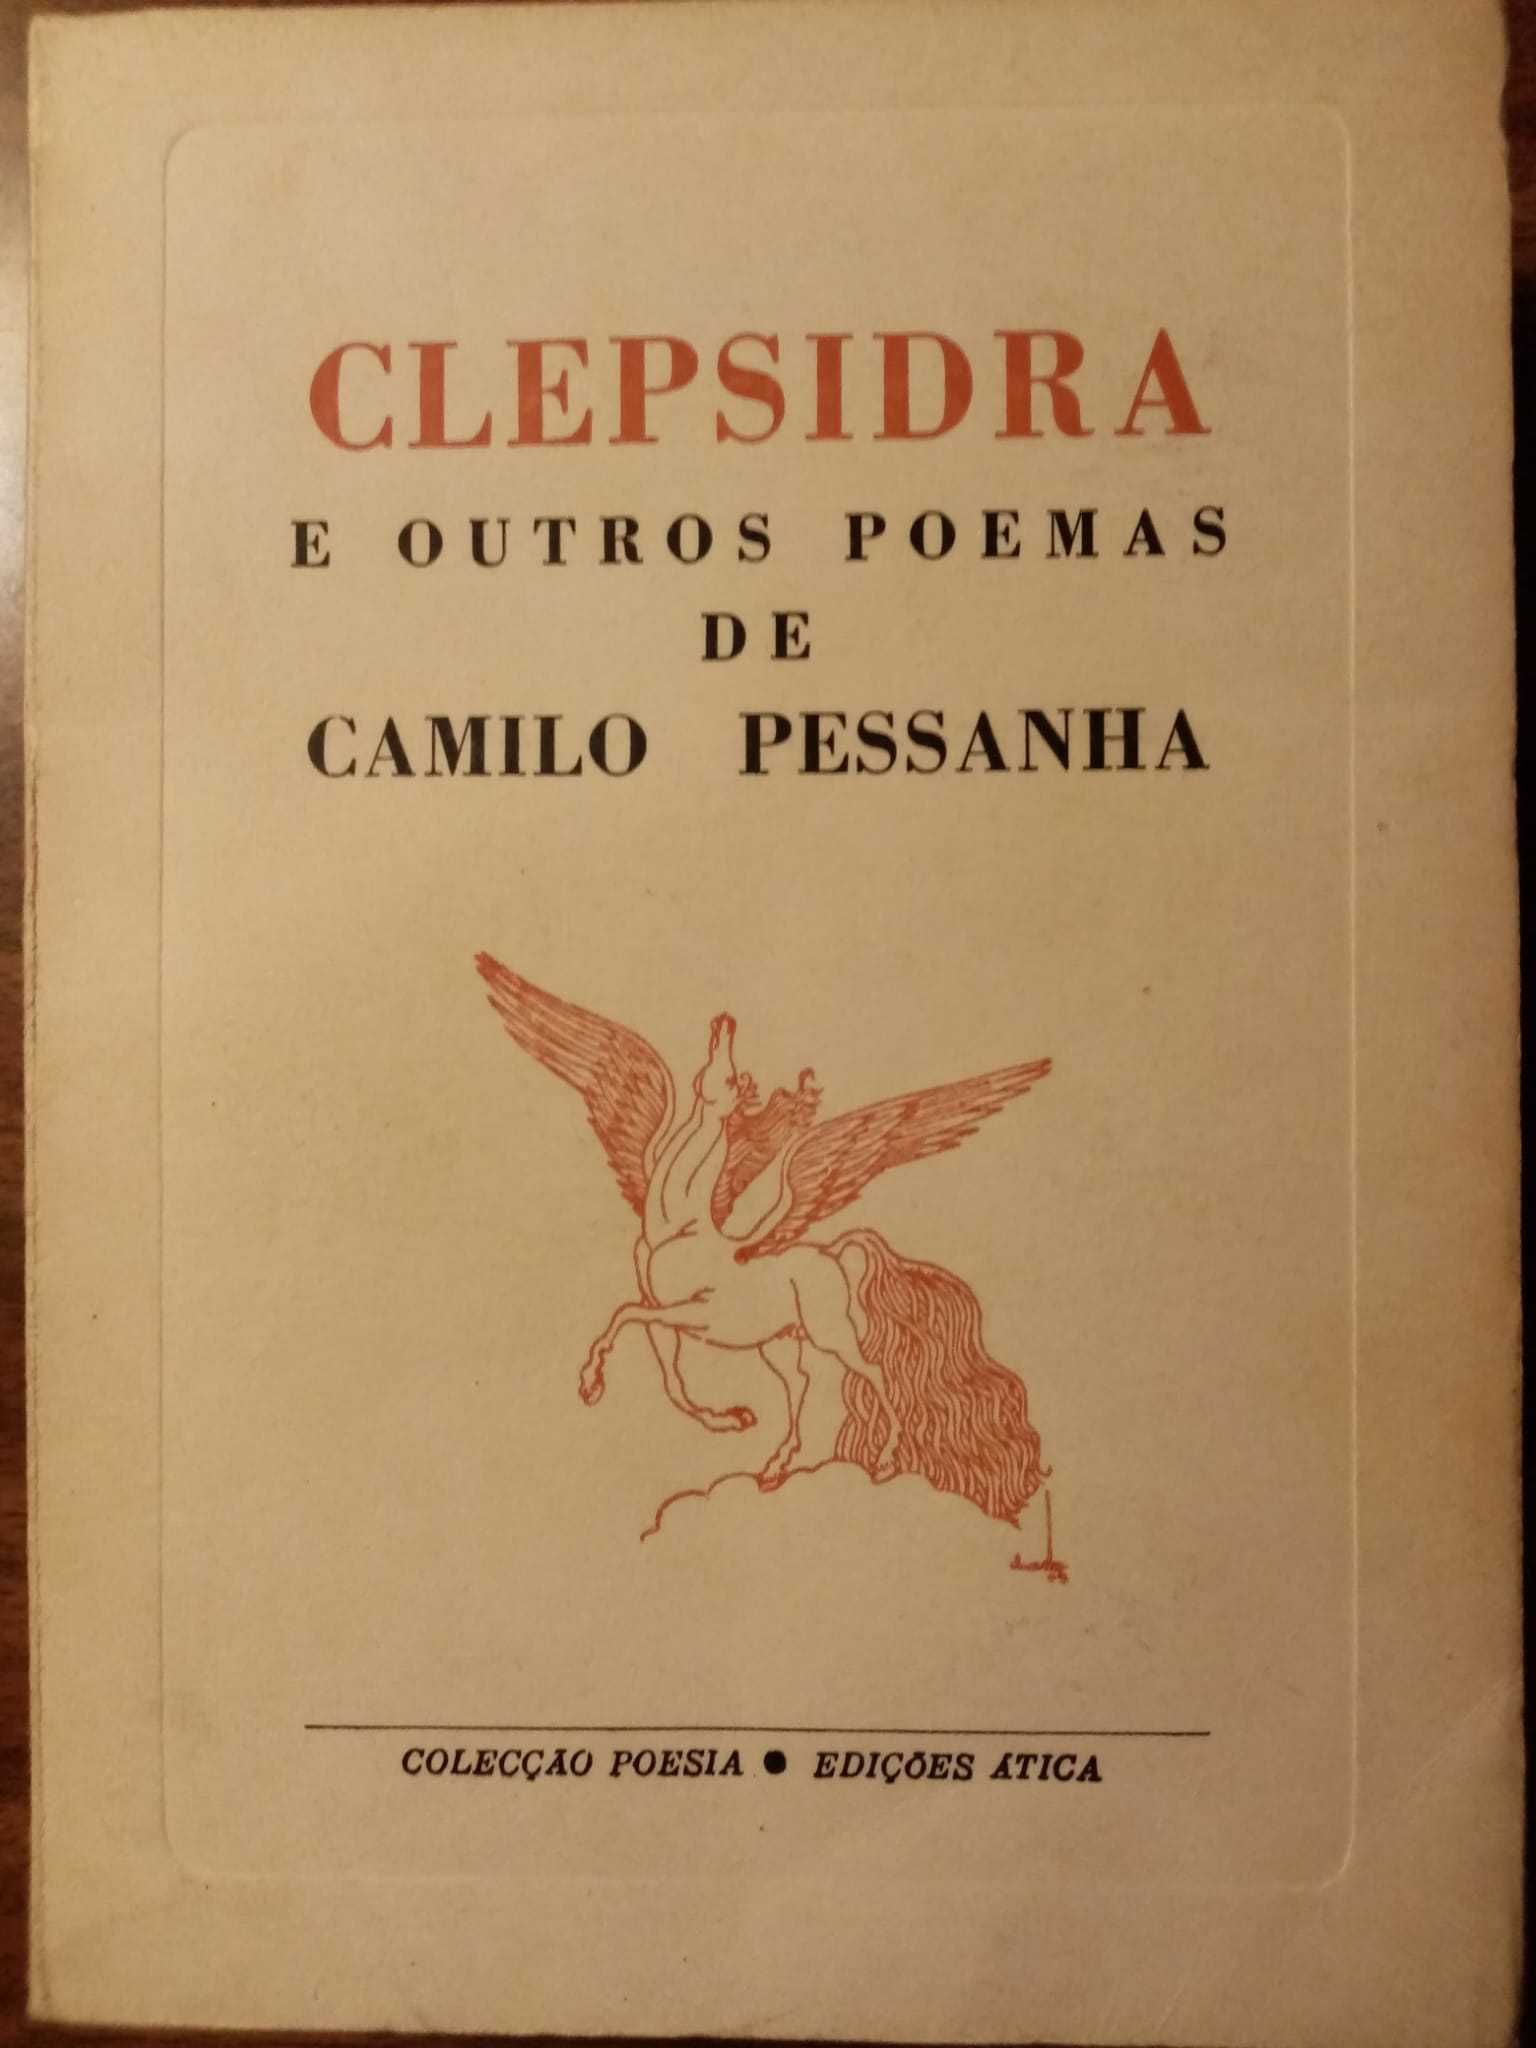 livro: Camilo Pessanha “Clepsidra e outros poemas”